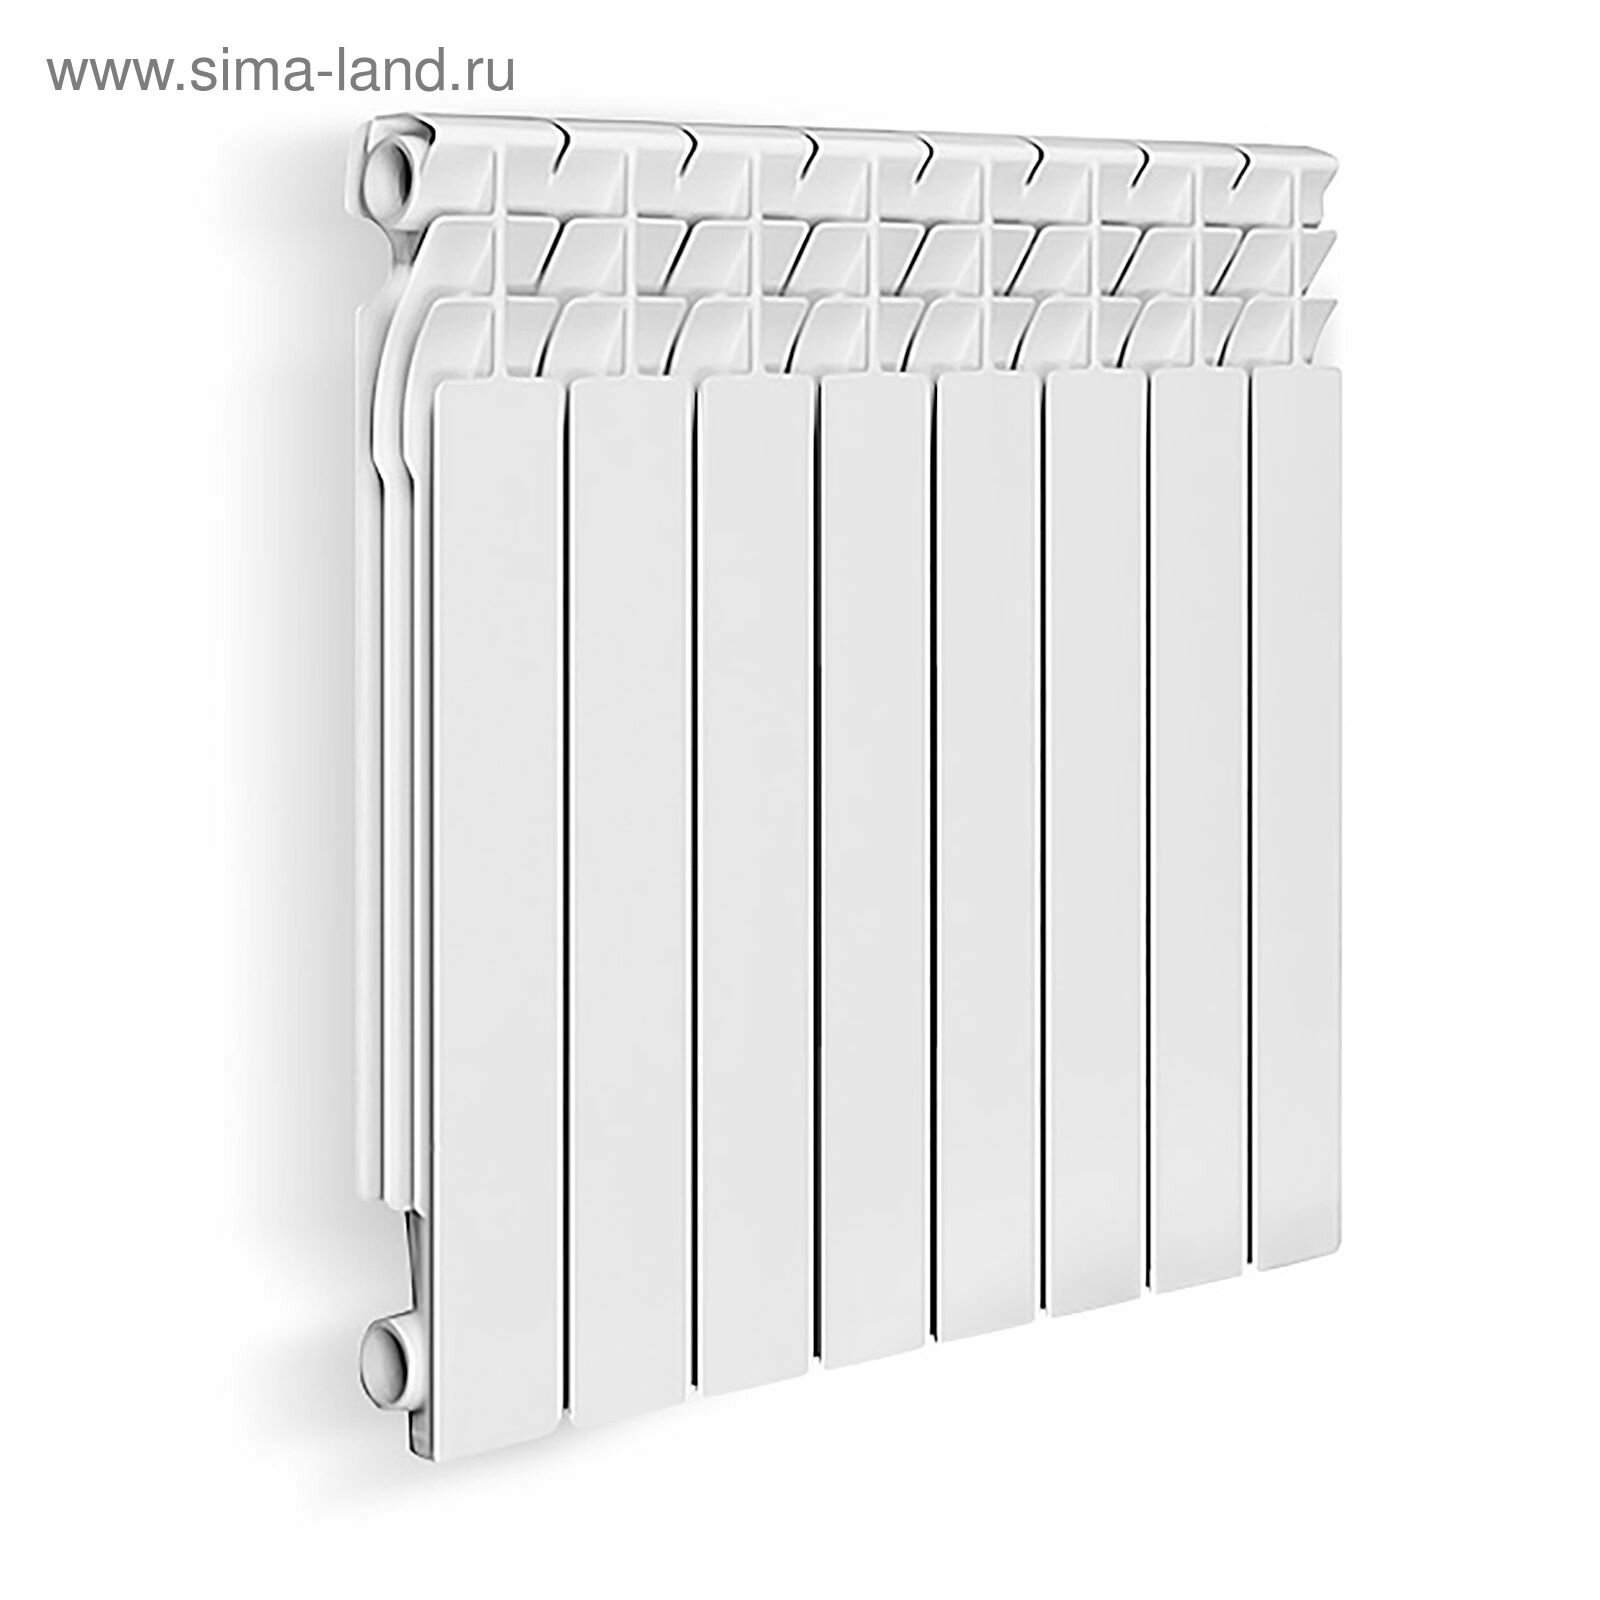 Радиатор алюминиевый, 500 х 70 мм, 8 секций